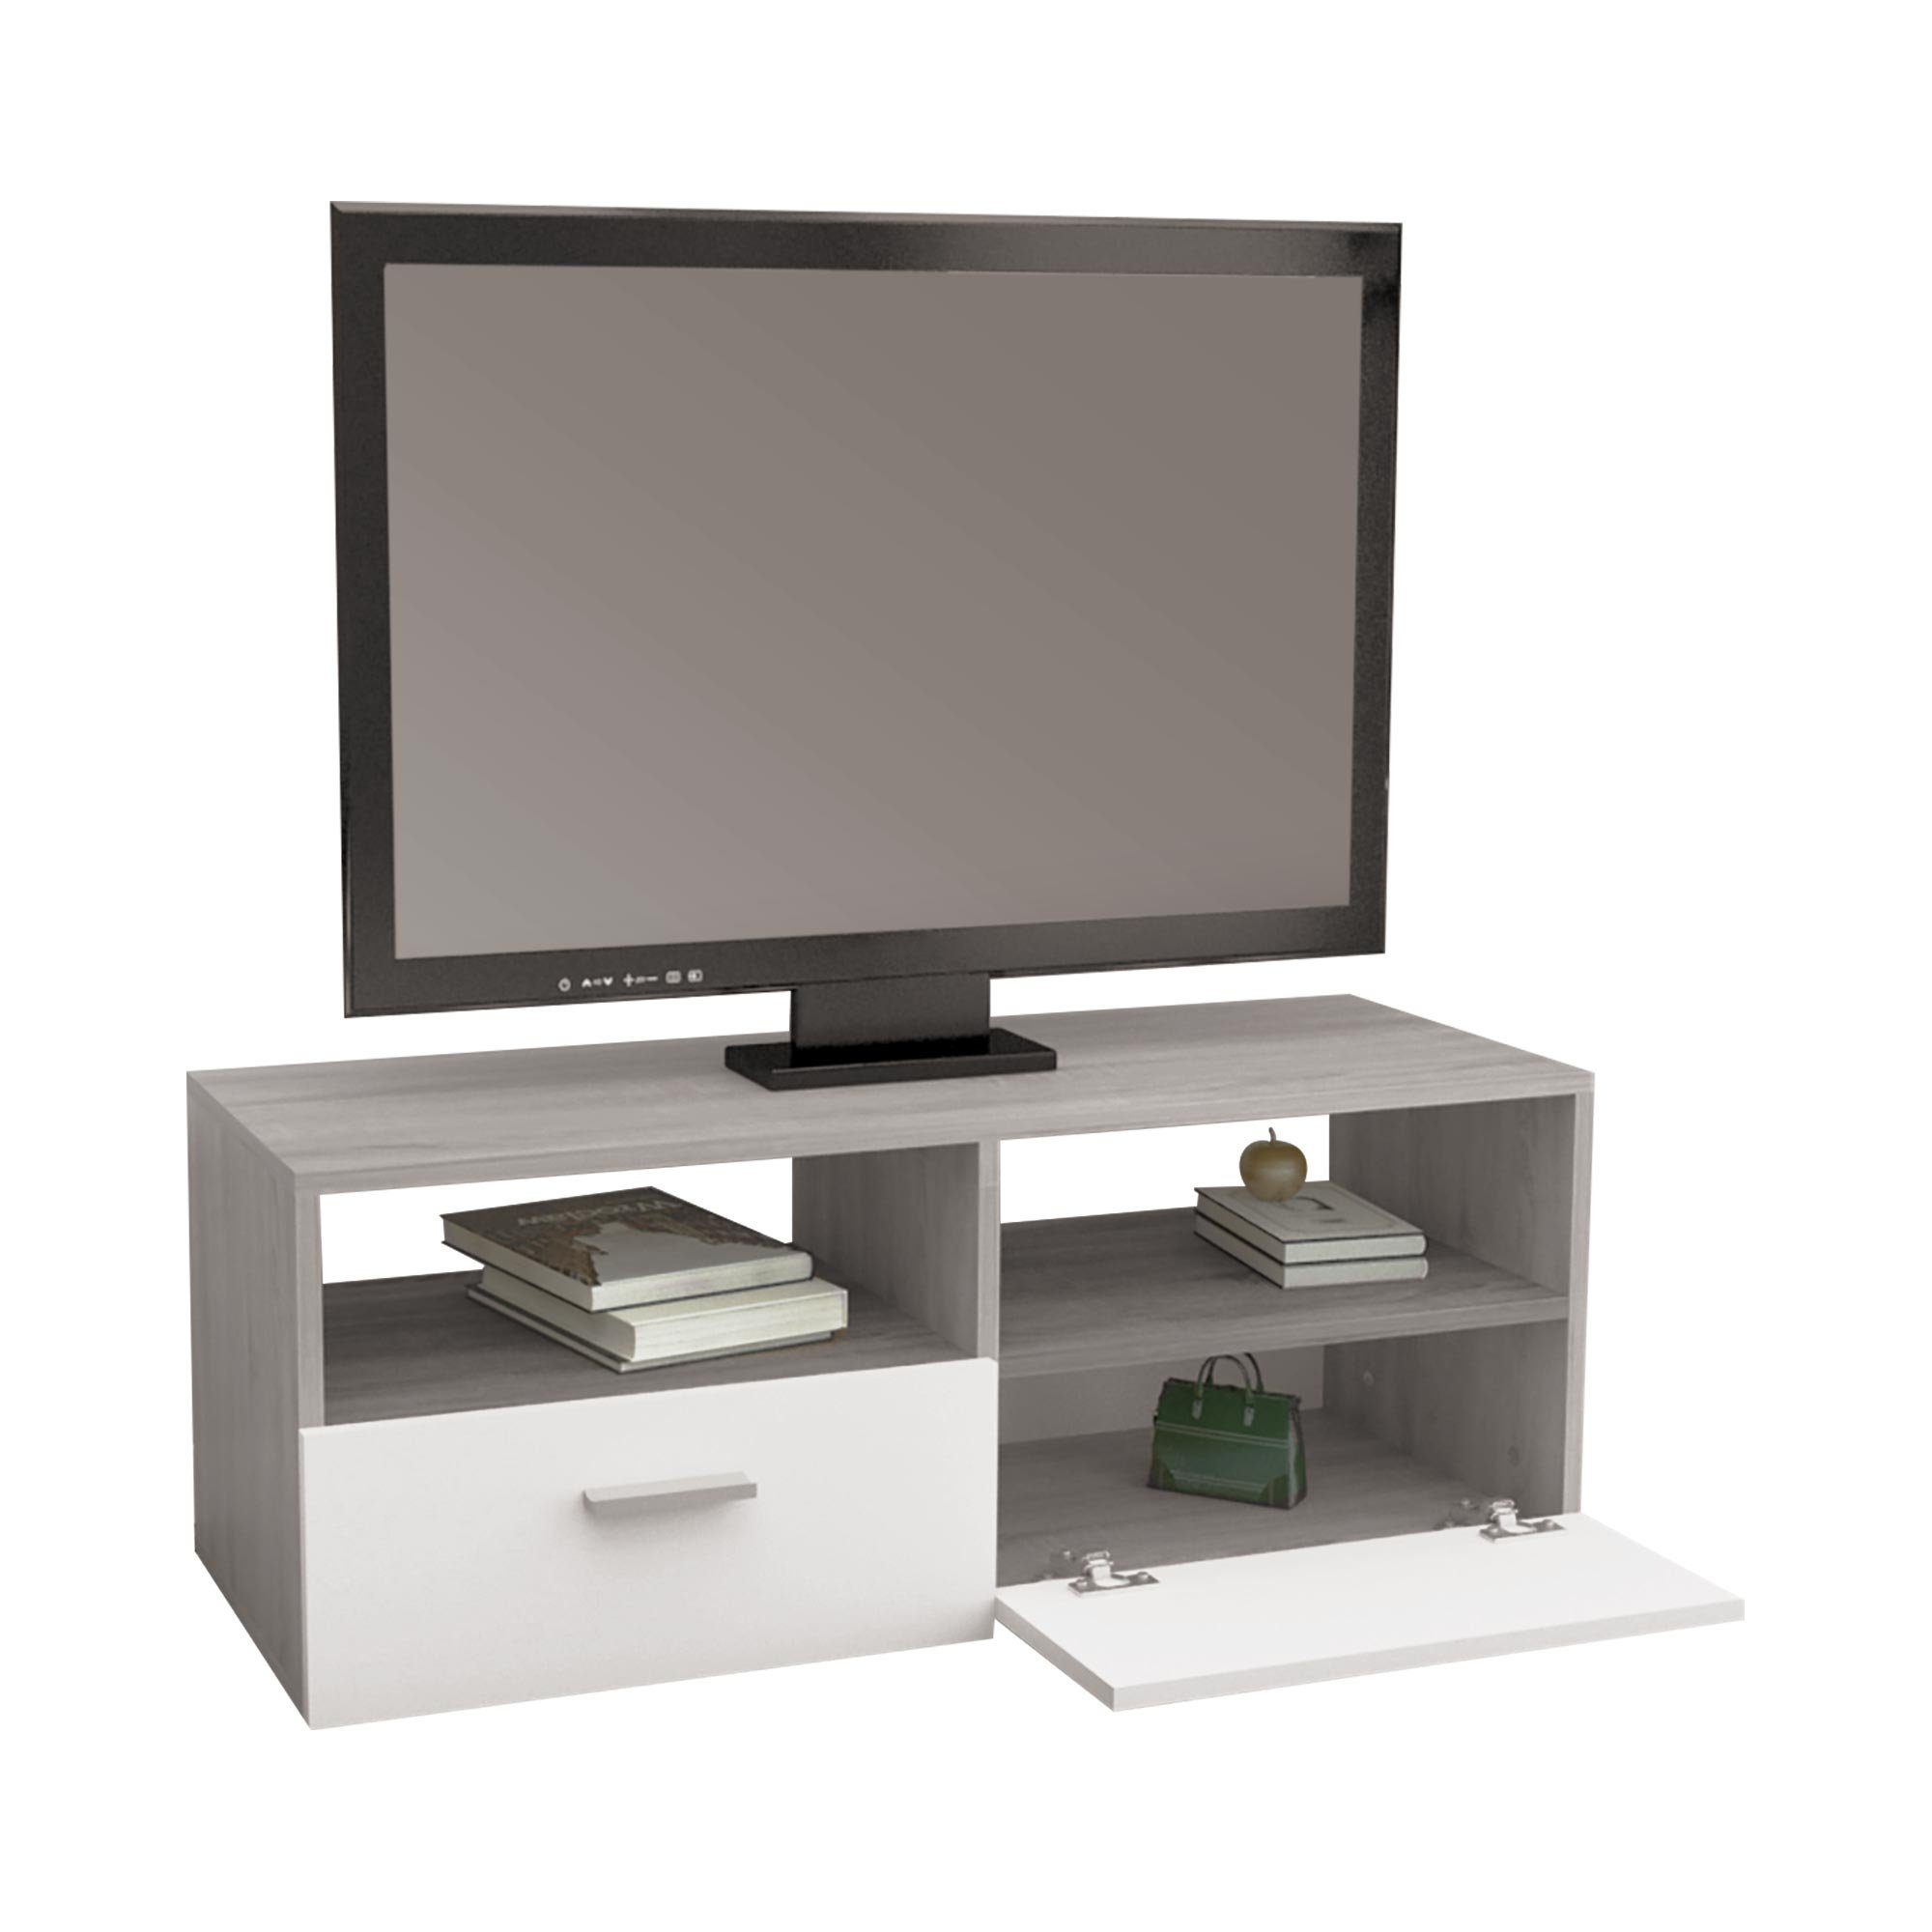 ML-DESIGN Sideboard TV-Lowboard Modernes TV-Board mit Stauraum für Wohnzimmer, aus Holz, mit 2 Klapptüren und 2 offenen Fächern Grau, Weiß